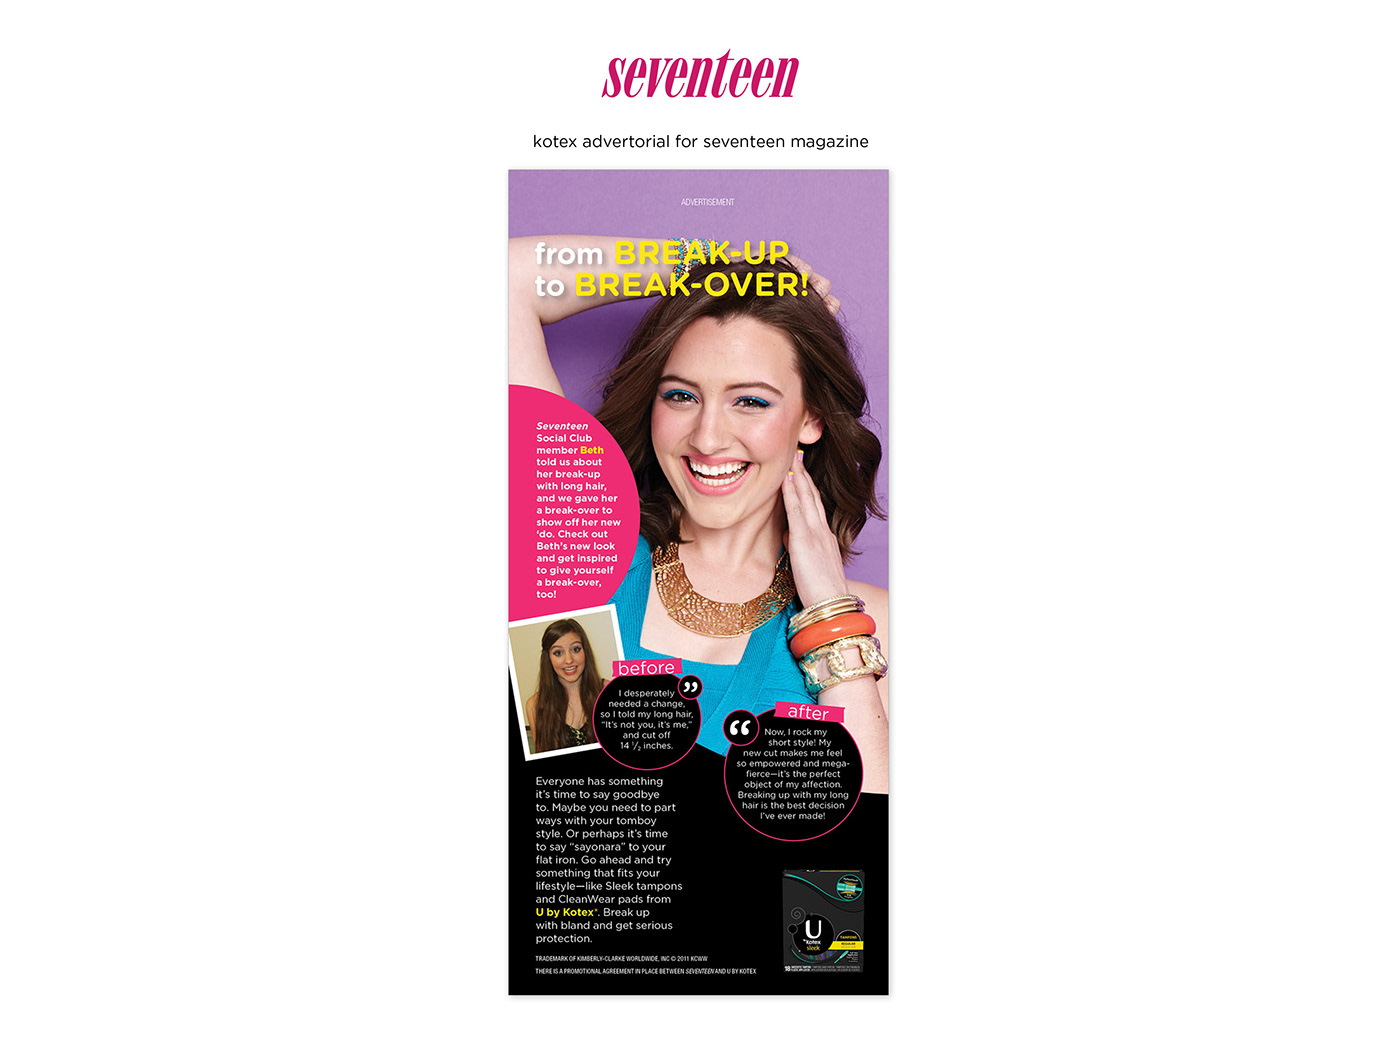 Seventeen Digital Flyer hearst conde nast magazine advertorial gatorade Advertising  media Social media post